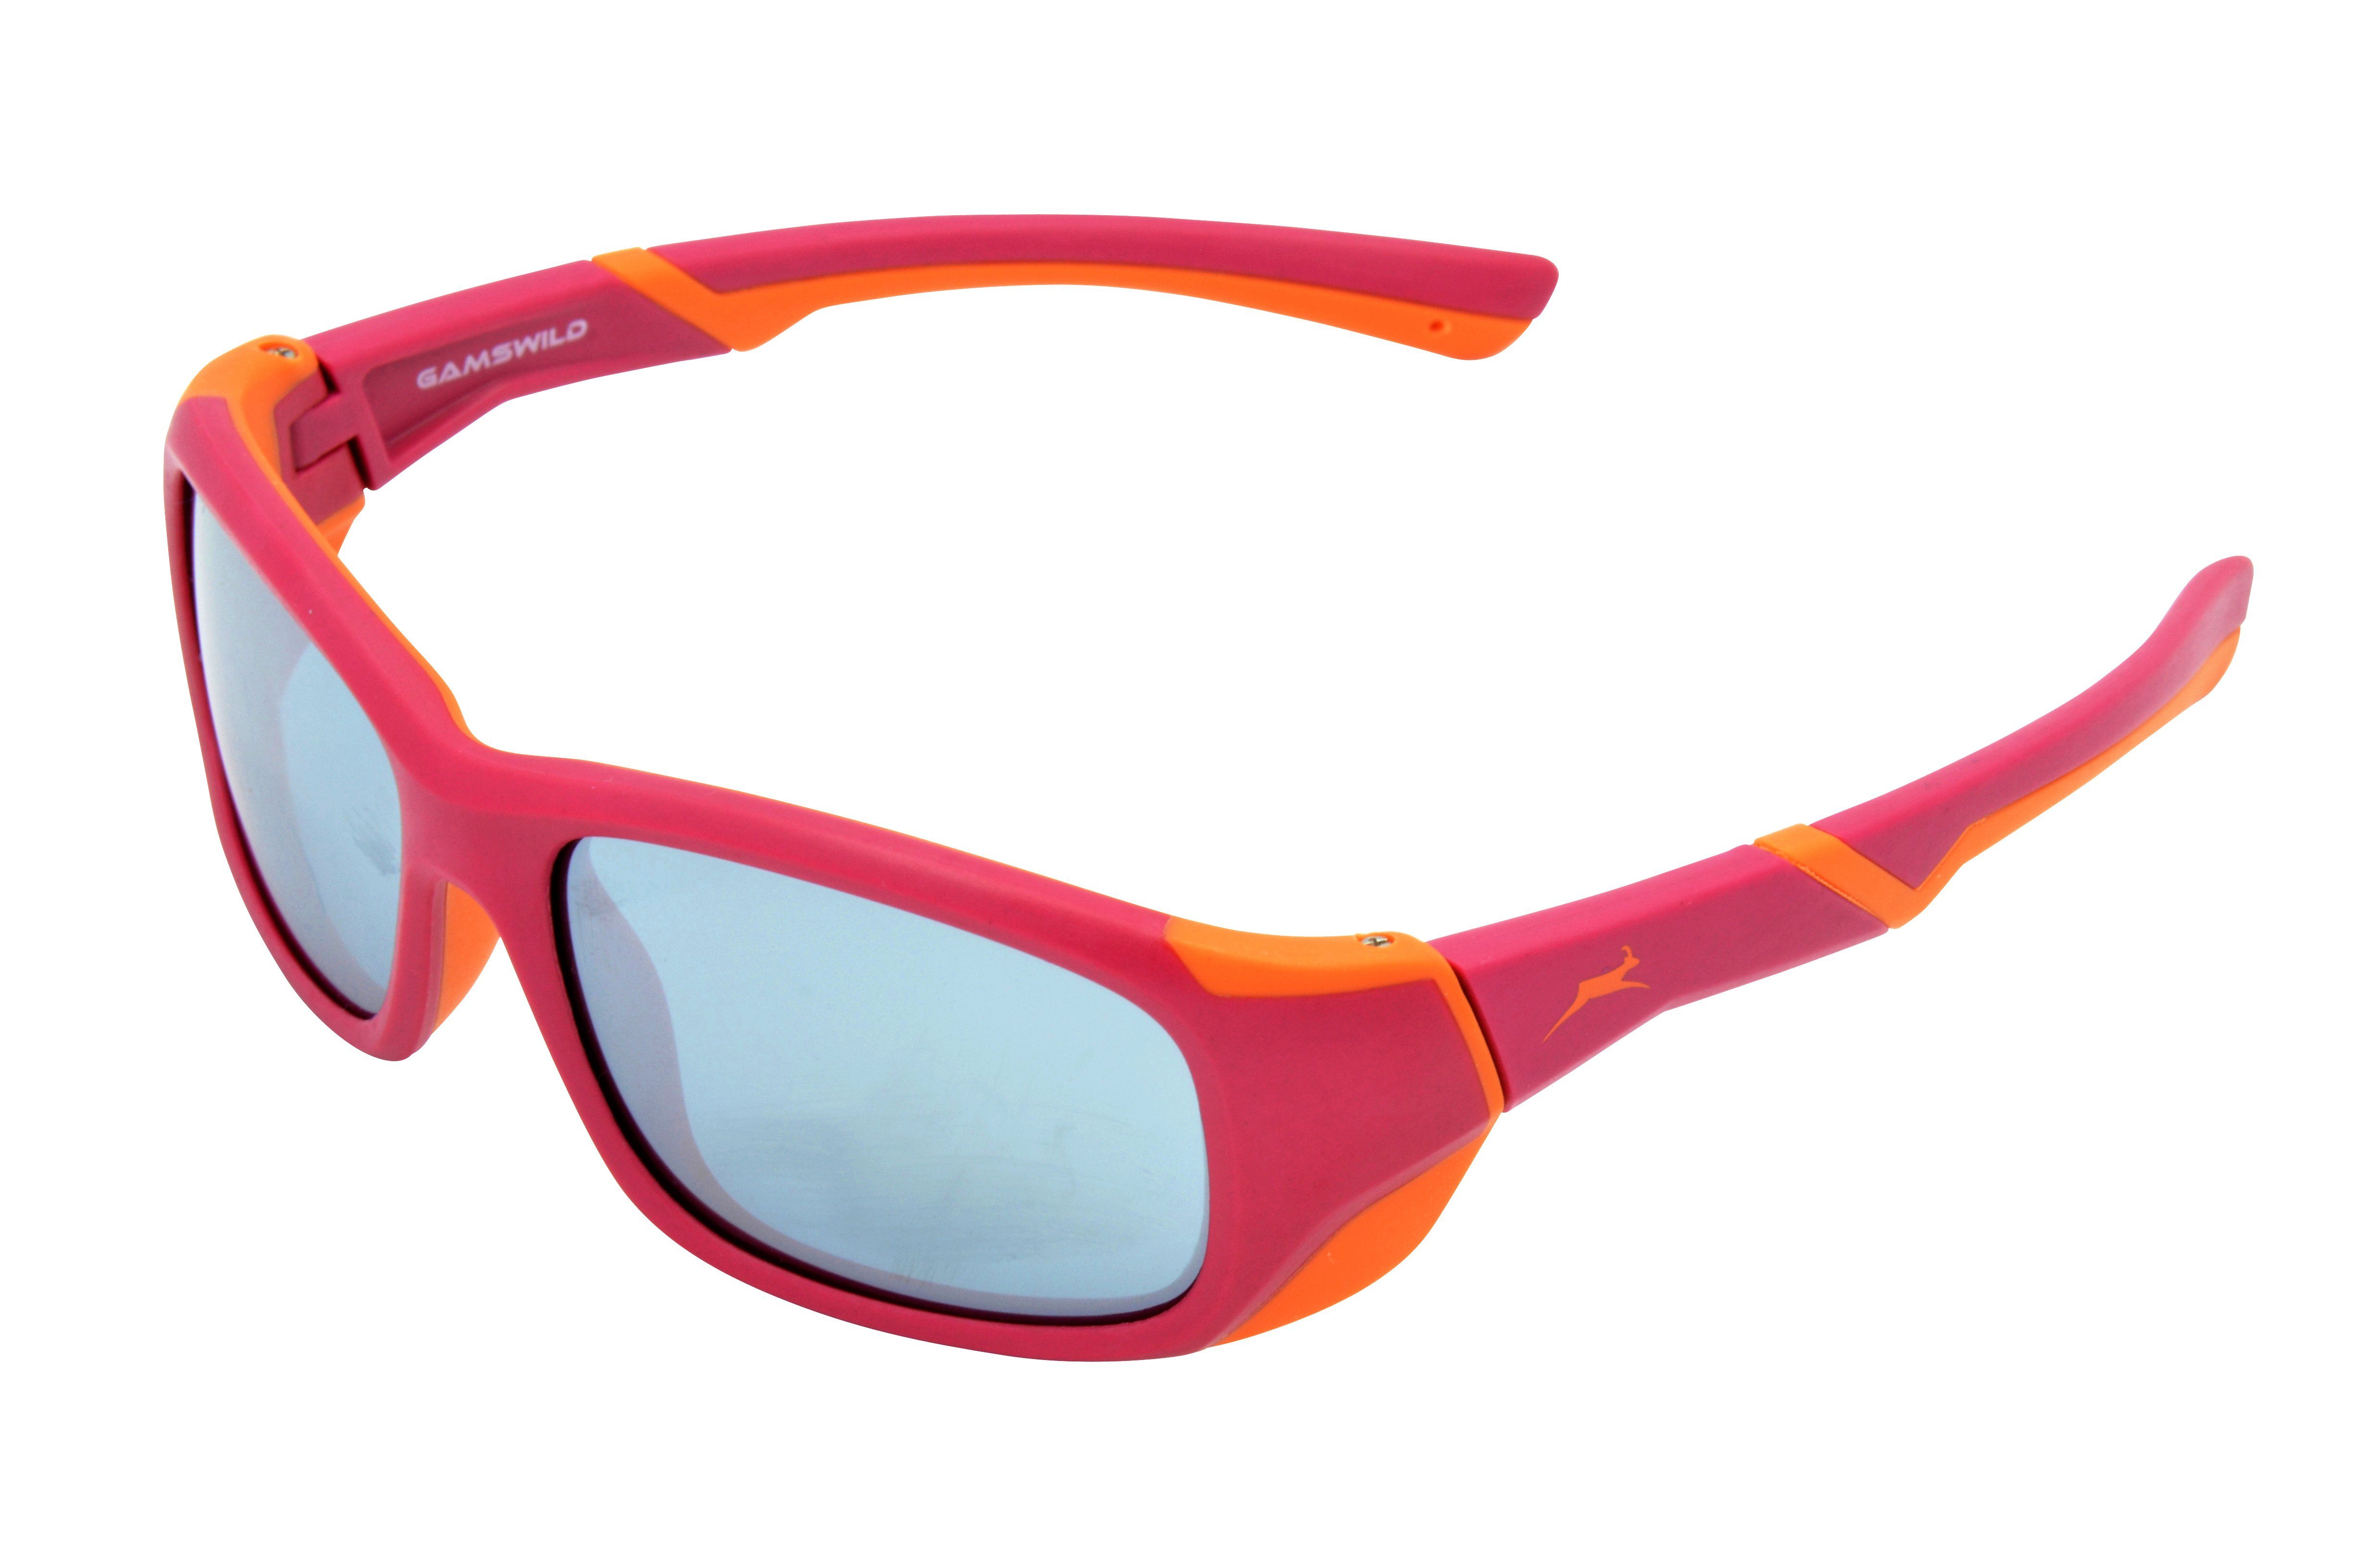 Gamswild Sonnenbrille WJ5119 GAMSKIDS Kinderbrille 6-12 Jahre Jugendbrille Mädchen Jungen Unisex, blau - orange, grün - grau, dunkelrot -orange super flexible Bügel